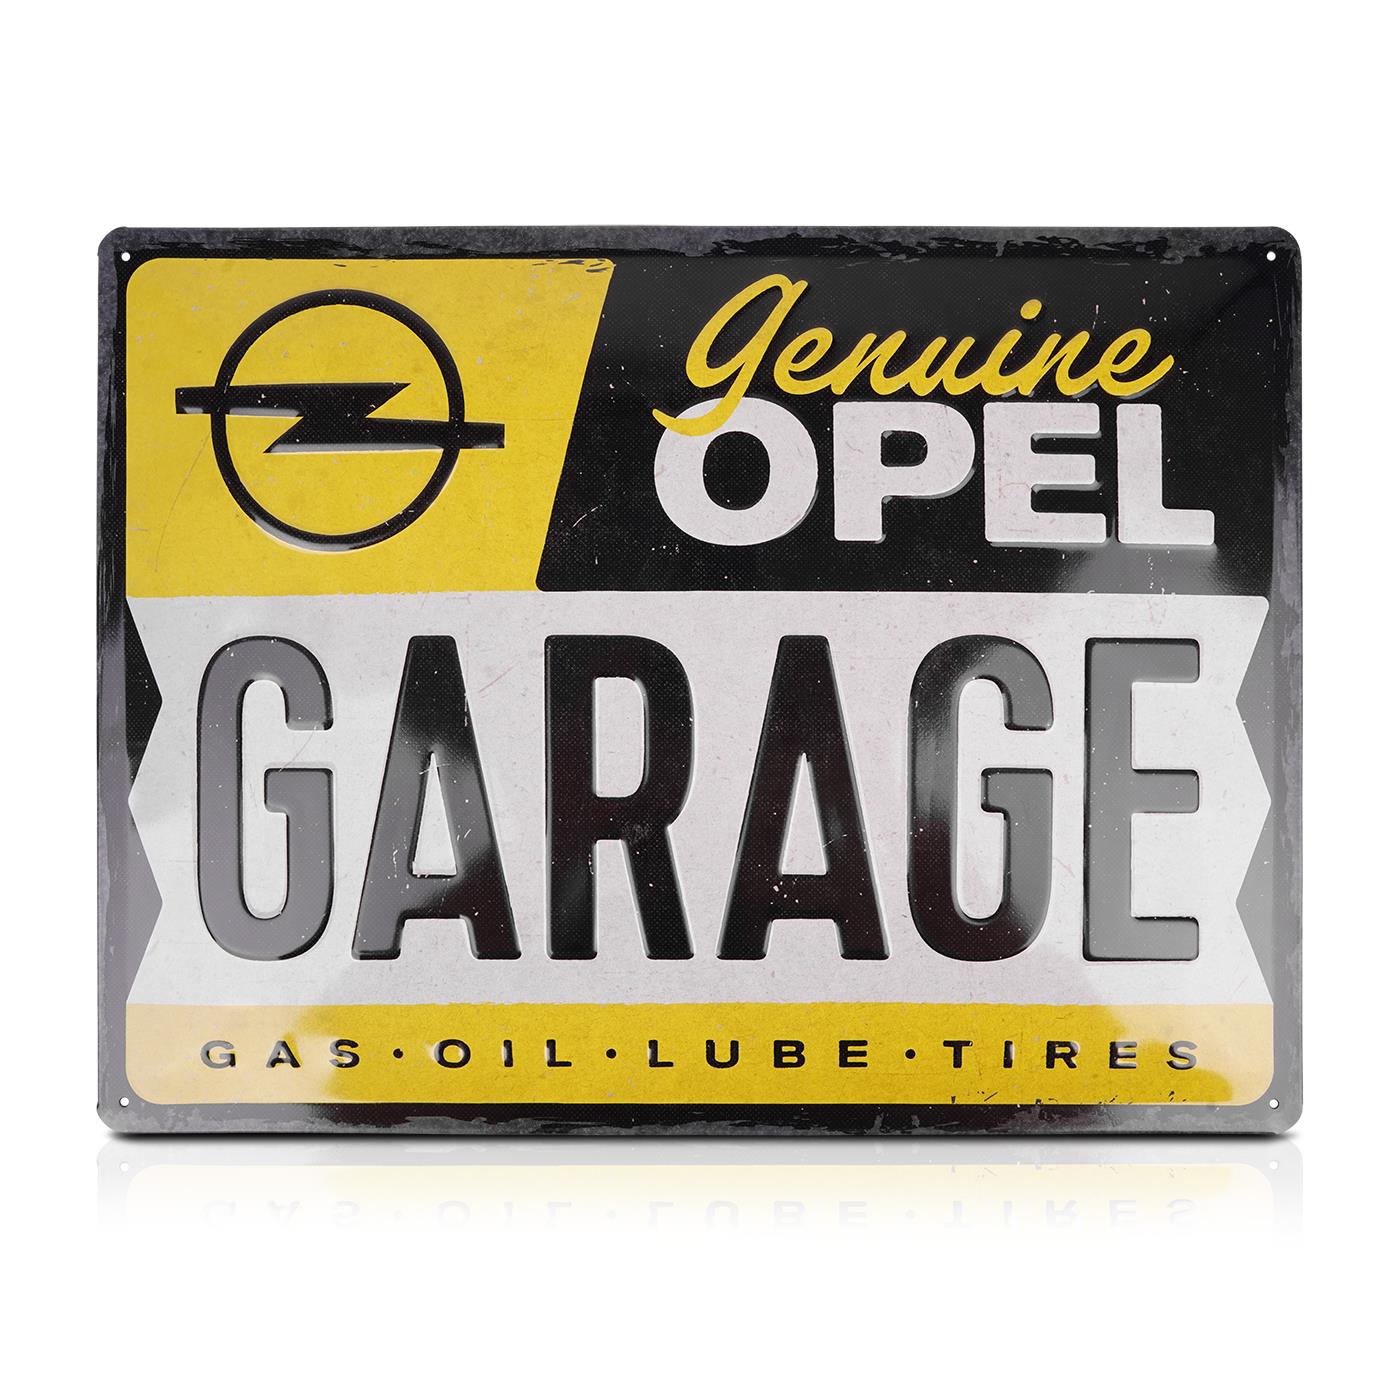 Blechschild Genuine OPEL Garage